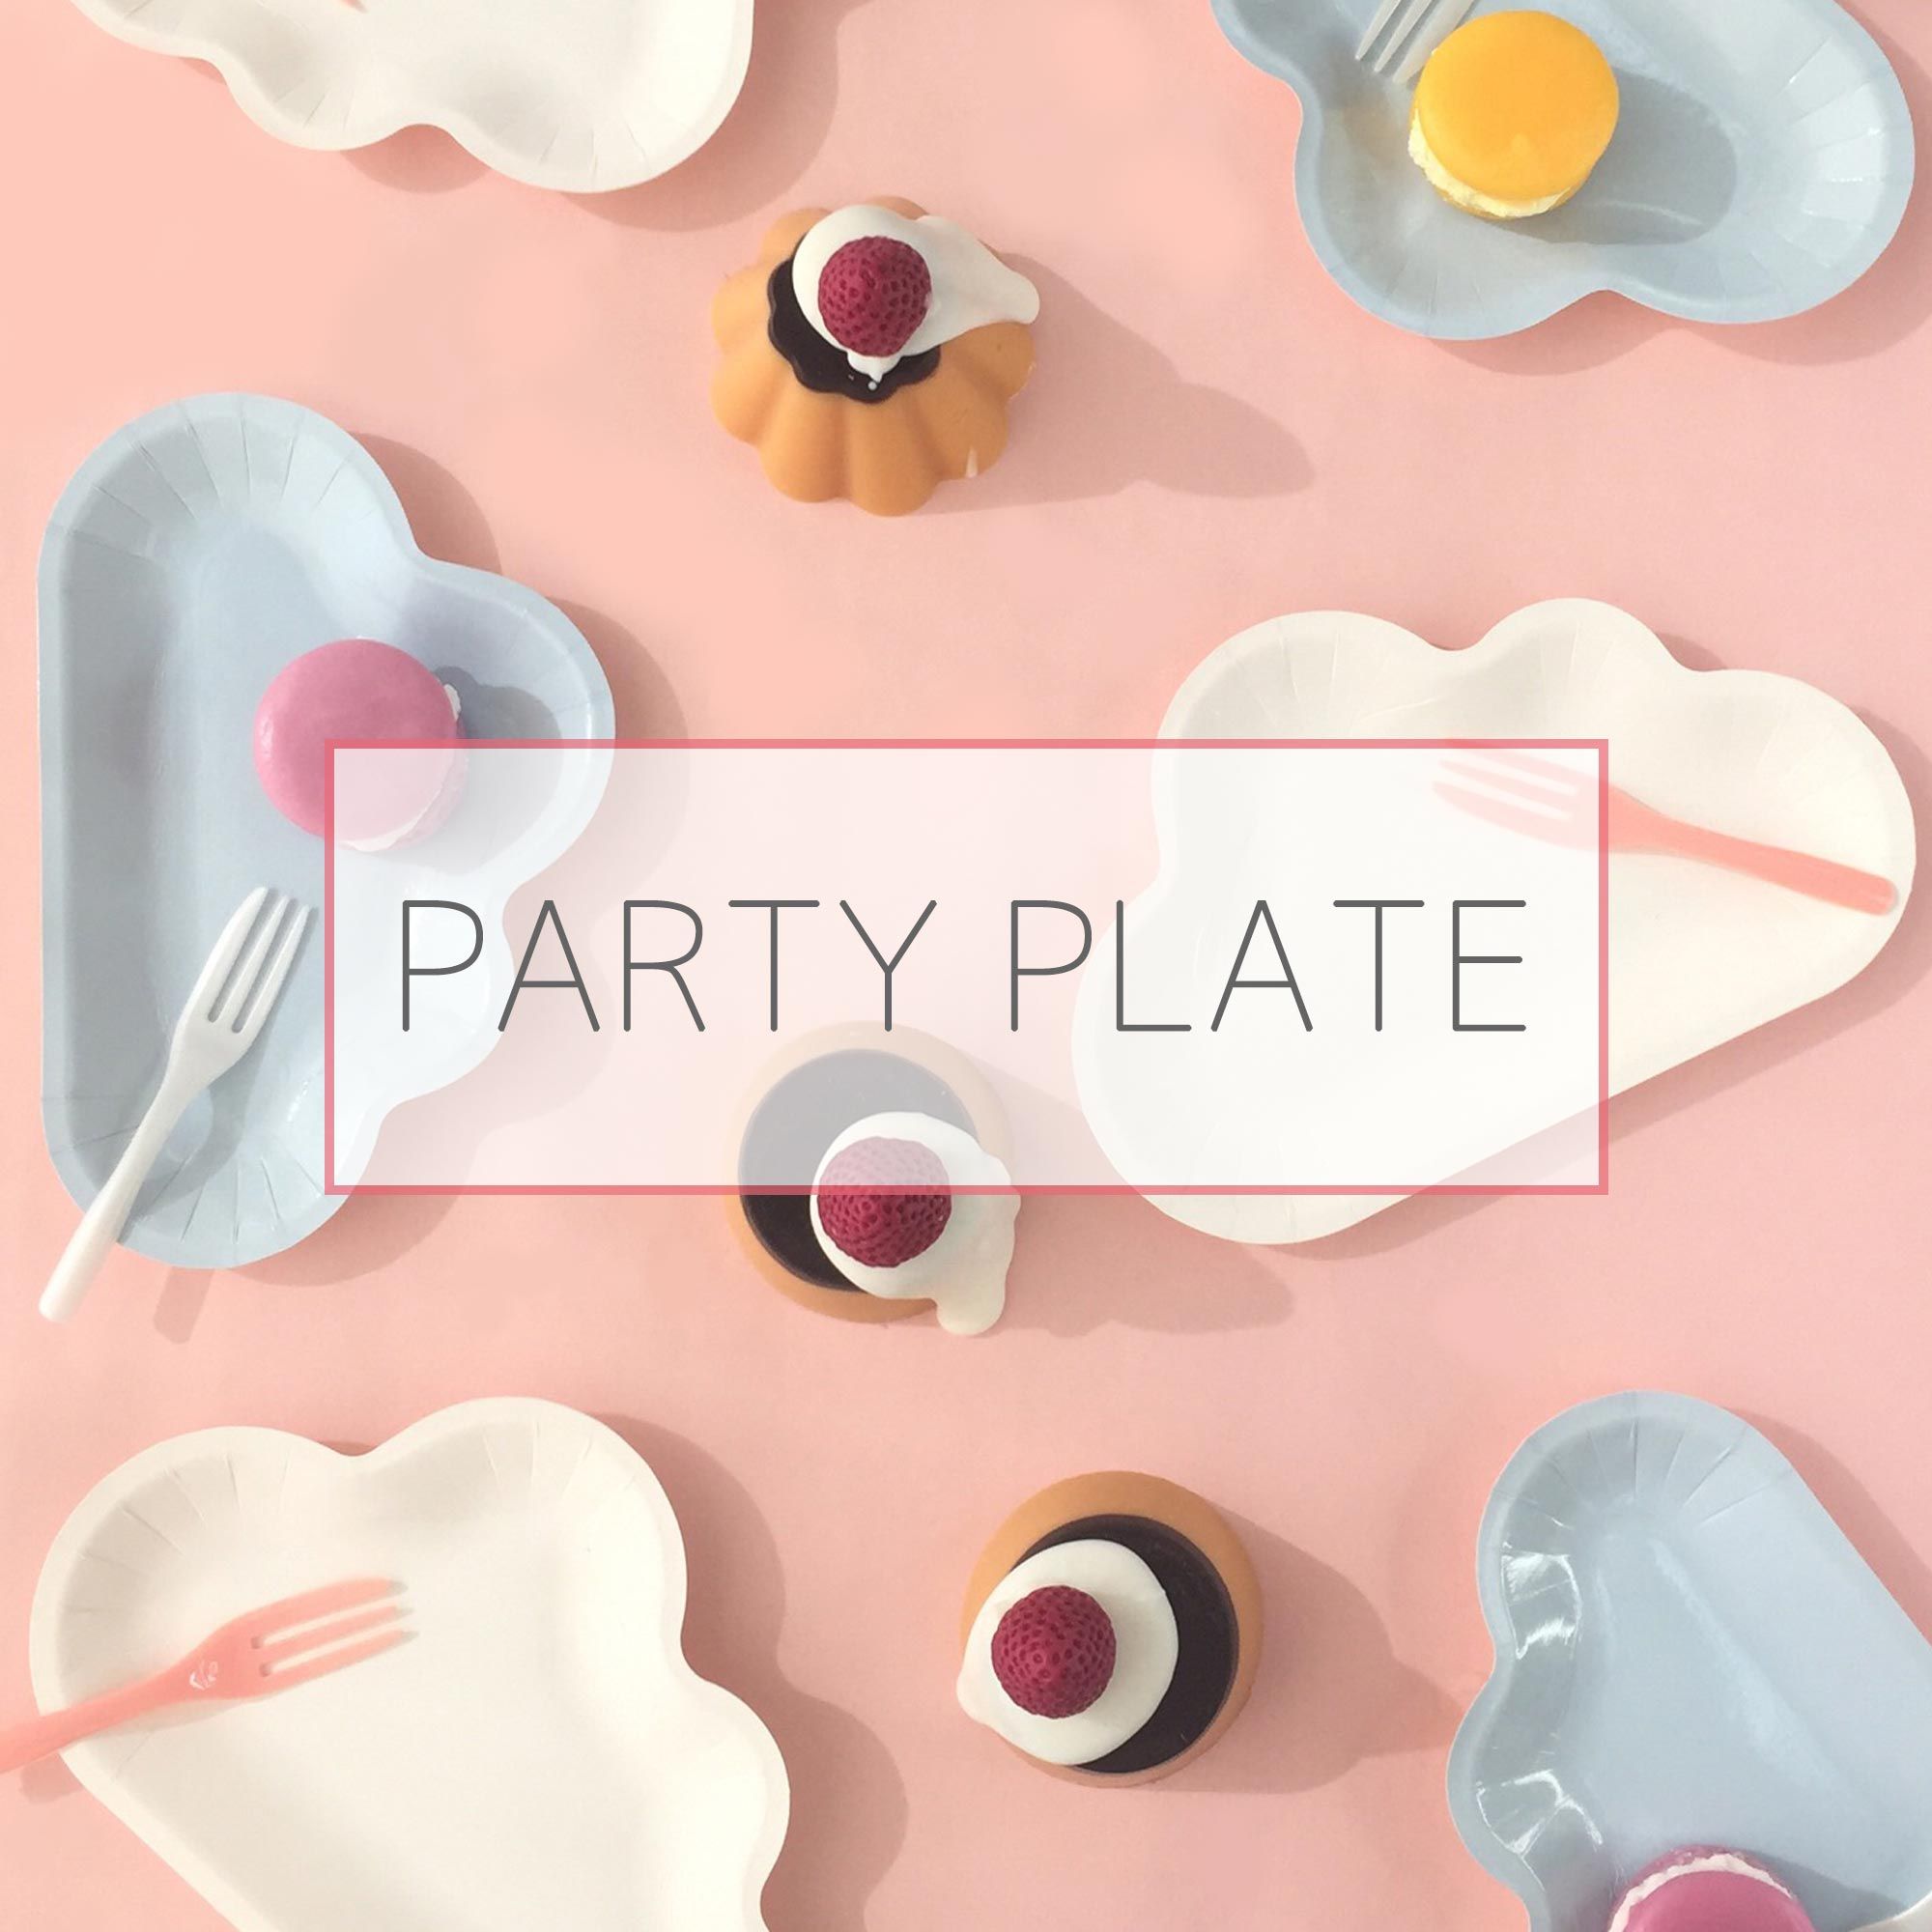 パーティー用ケーキプレート、フォーク、および紙皿